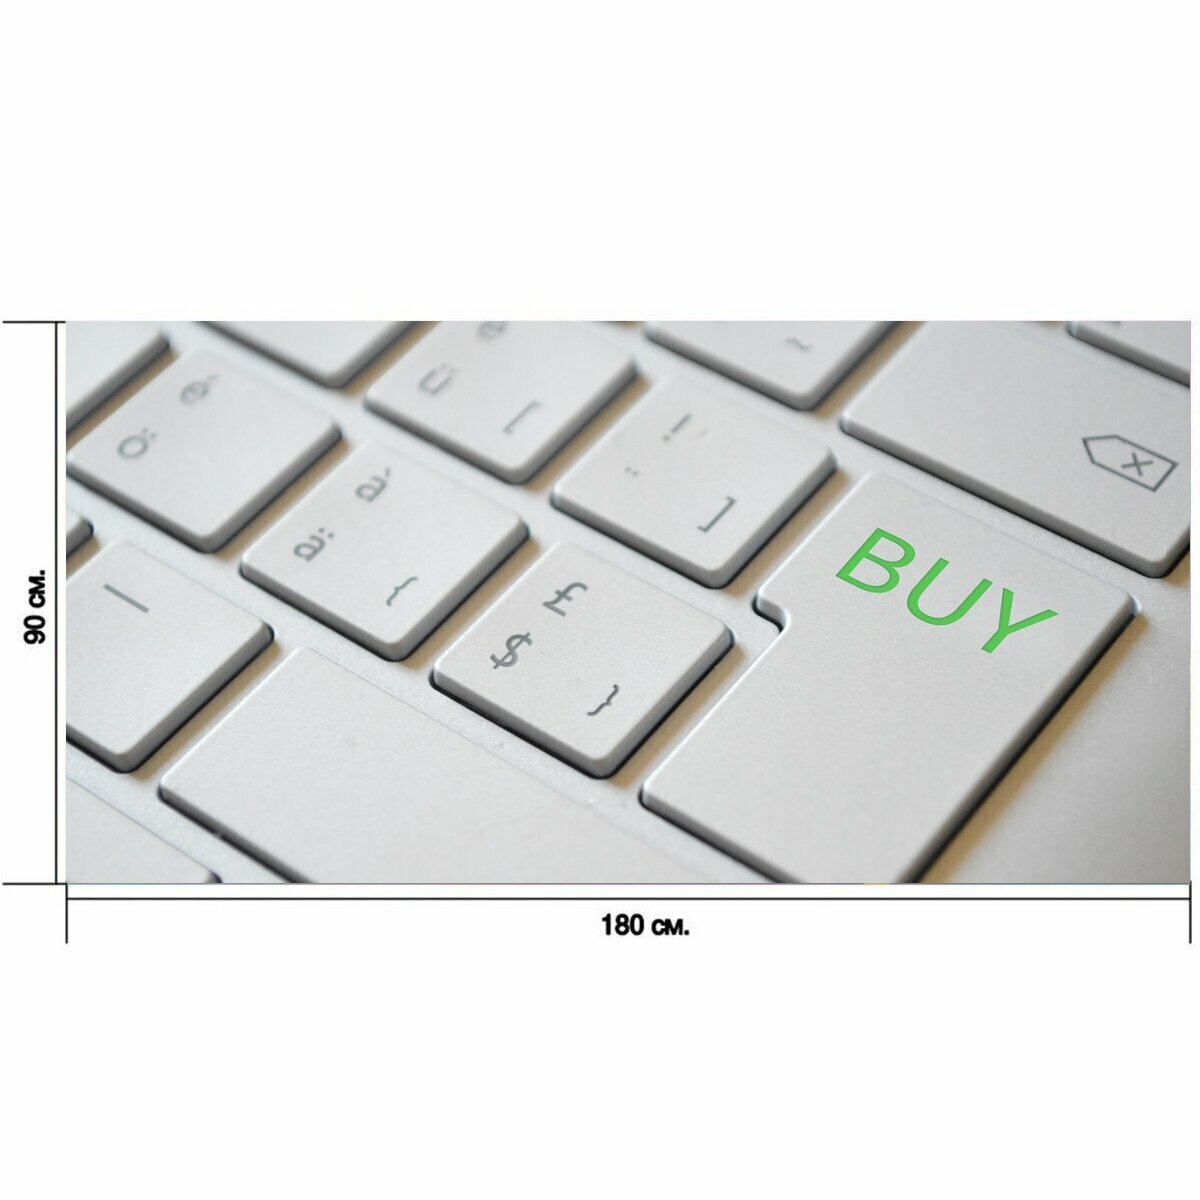 Большой постер "Покупать, клавиатура, введите" 180 x 90 см. для интерьера